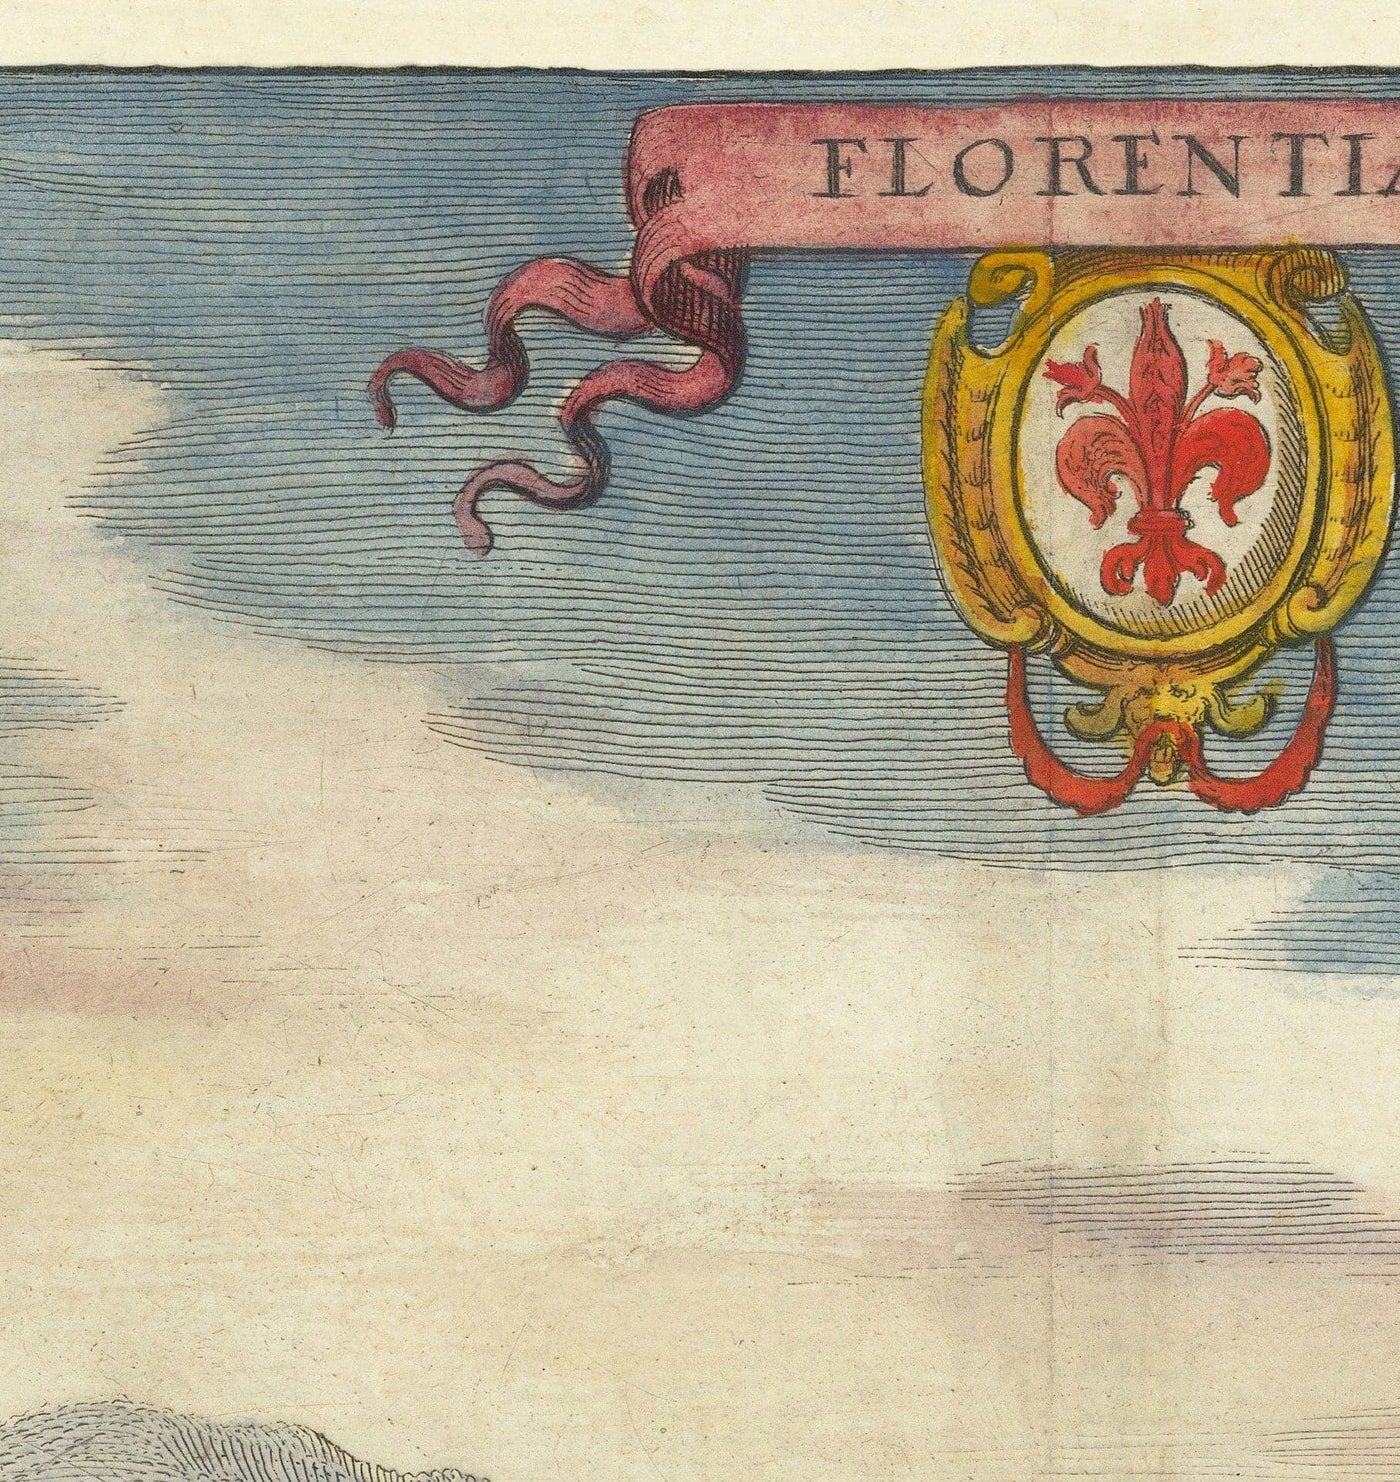 Antiguo mapa a vista de pájaro de Florencia, Italia, 1640 por Matthaus Merian - Florencia, Duomo, Río Arno, Ponte Vecchio, Uffizi